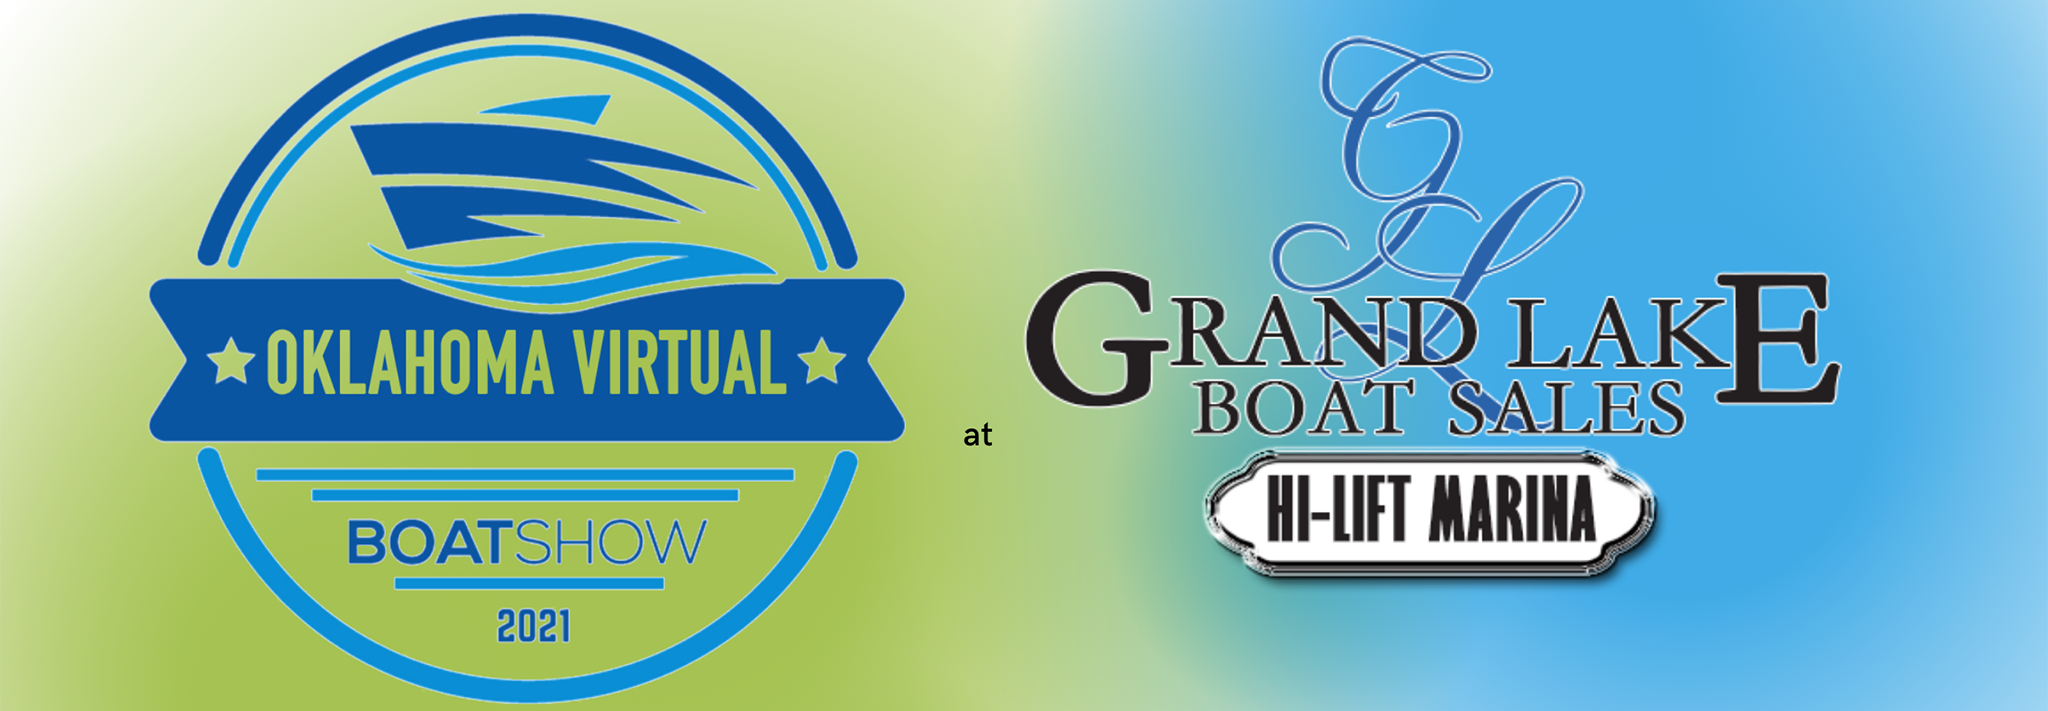 Oklahoma Virtual Boat Show 2021 at Grand Lake Boat Sales Hi Lift Marina